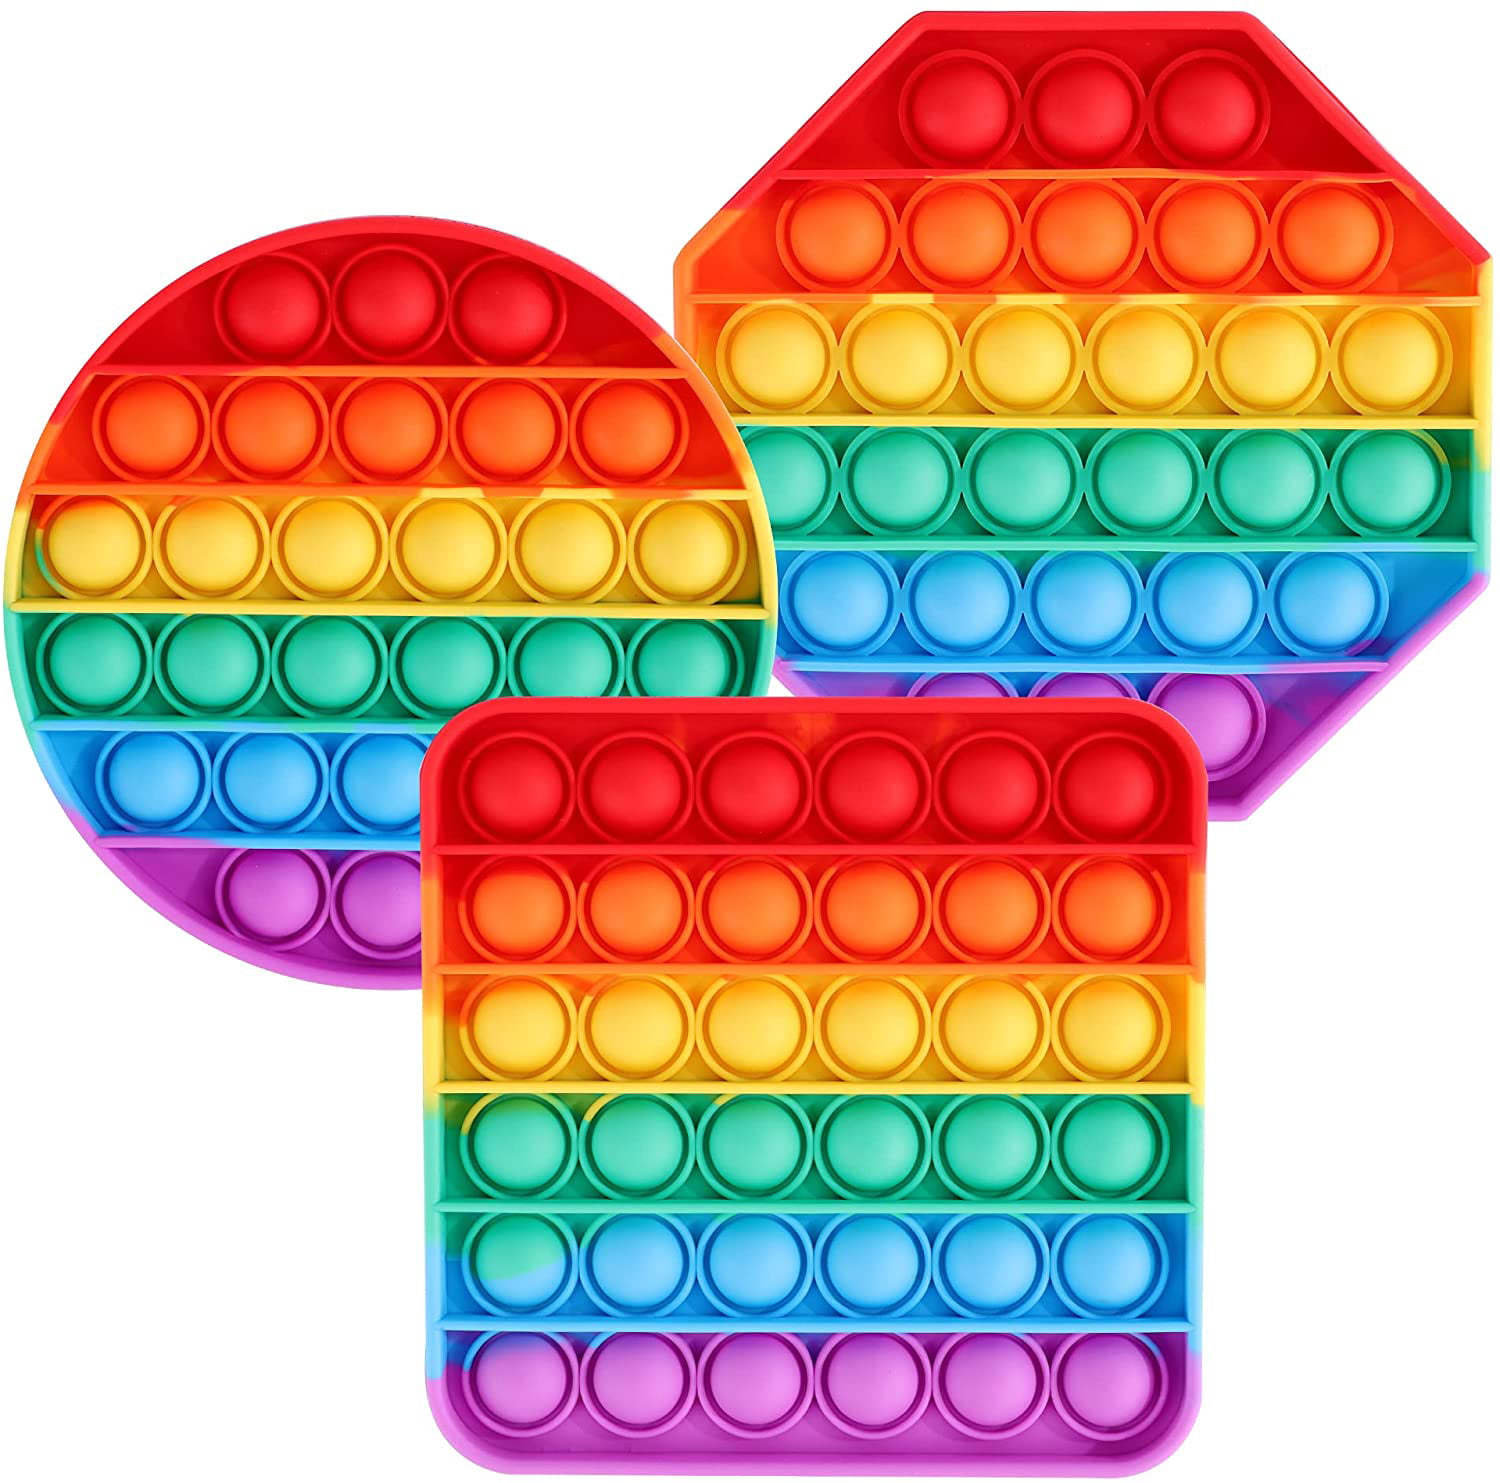 Details about   Pop its Push it Bubble Fidget Rainbow Tie Dye Sensory Toy Game Stress Reliever A 